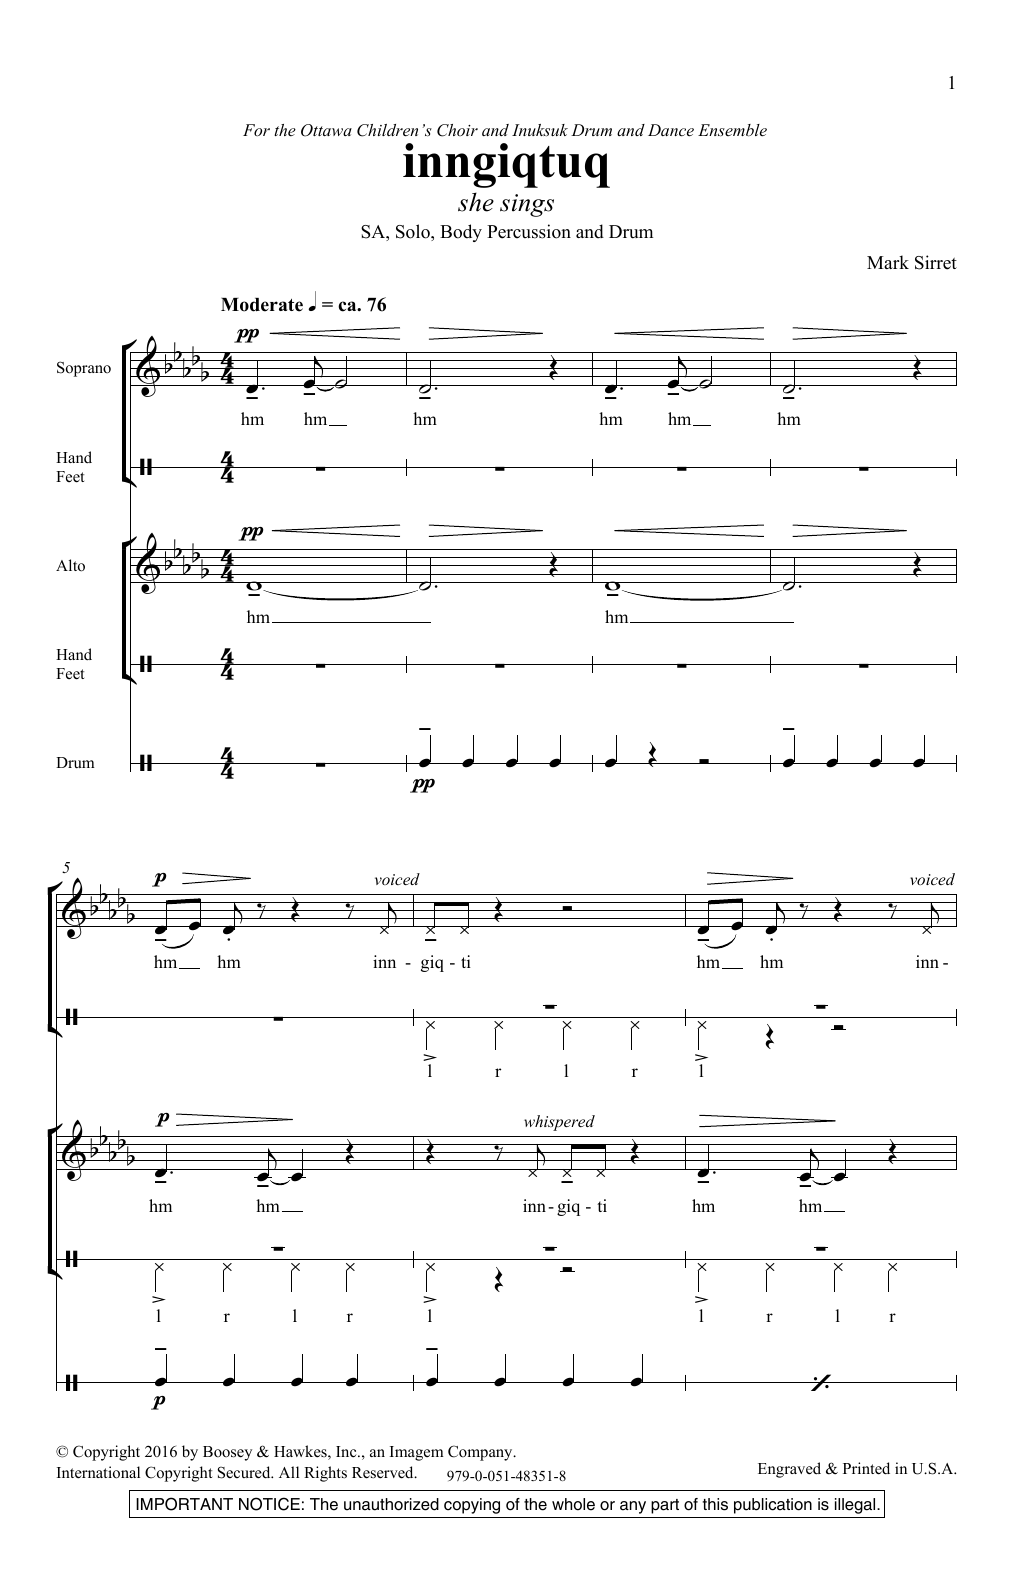 Mark Sirett Inngiqtuq Sheet Music Notes & Chords for 2-Part Choir - Download or Print PDF